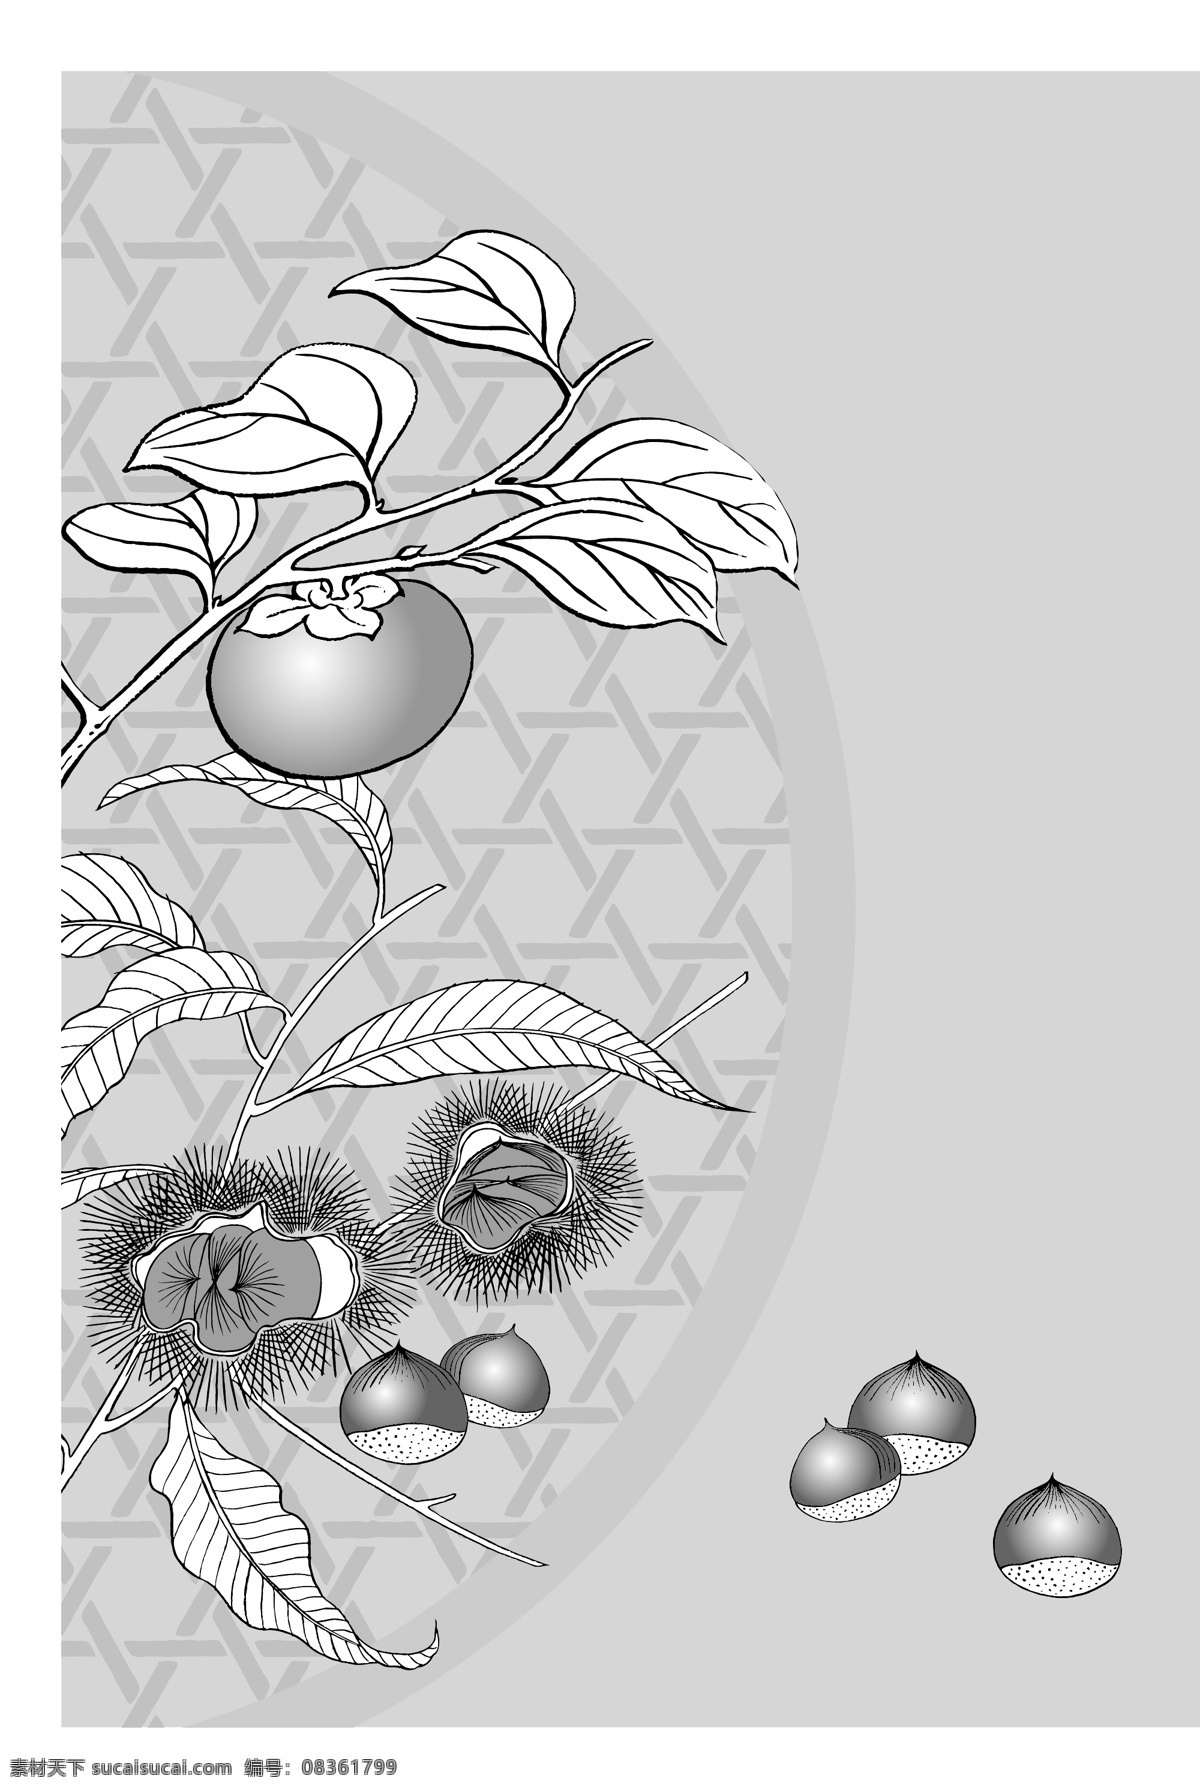 日本 线描 植物 花卉 矢量 栗子 柿子 勾线 花朵 枝叶 花型 黑白 矢量元素 卡通设计